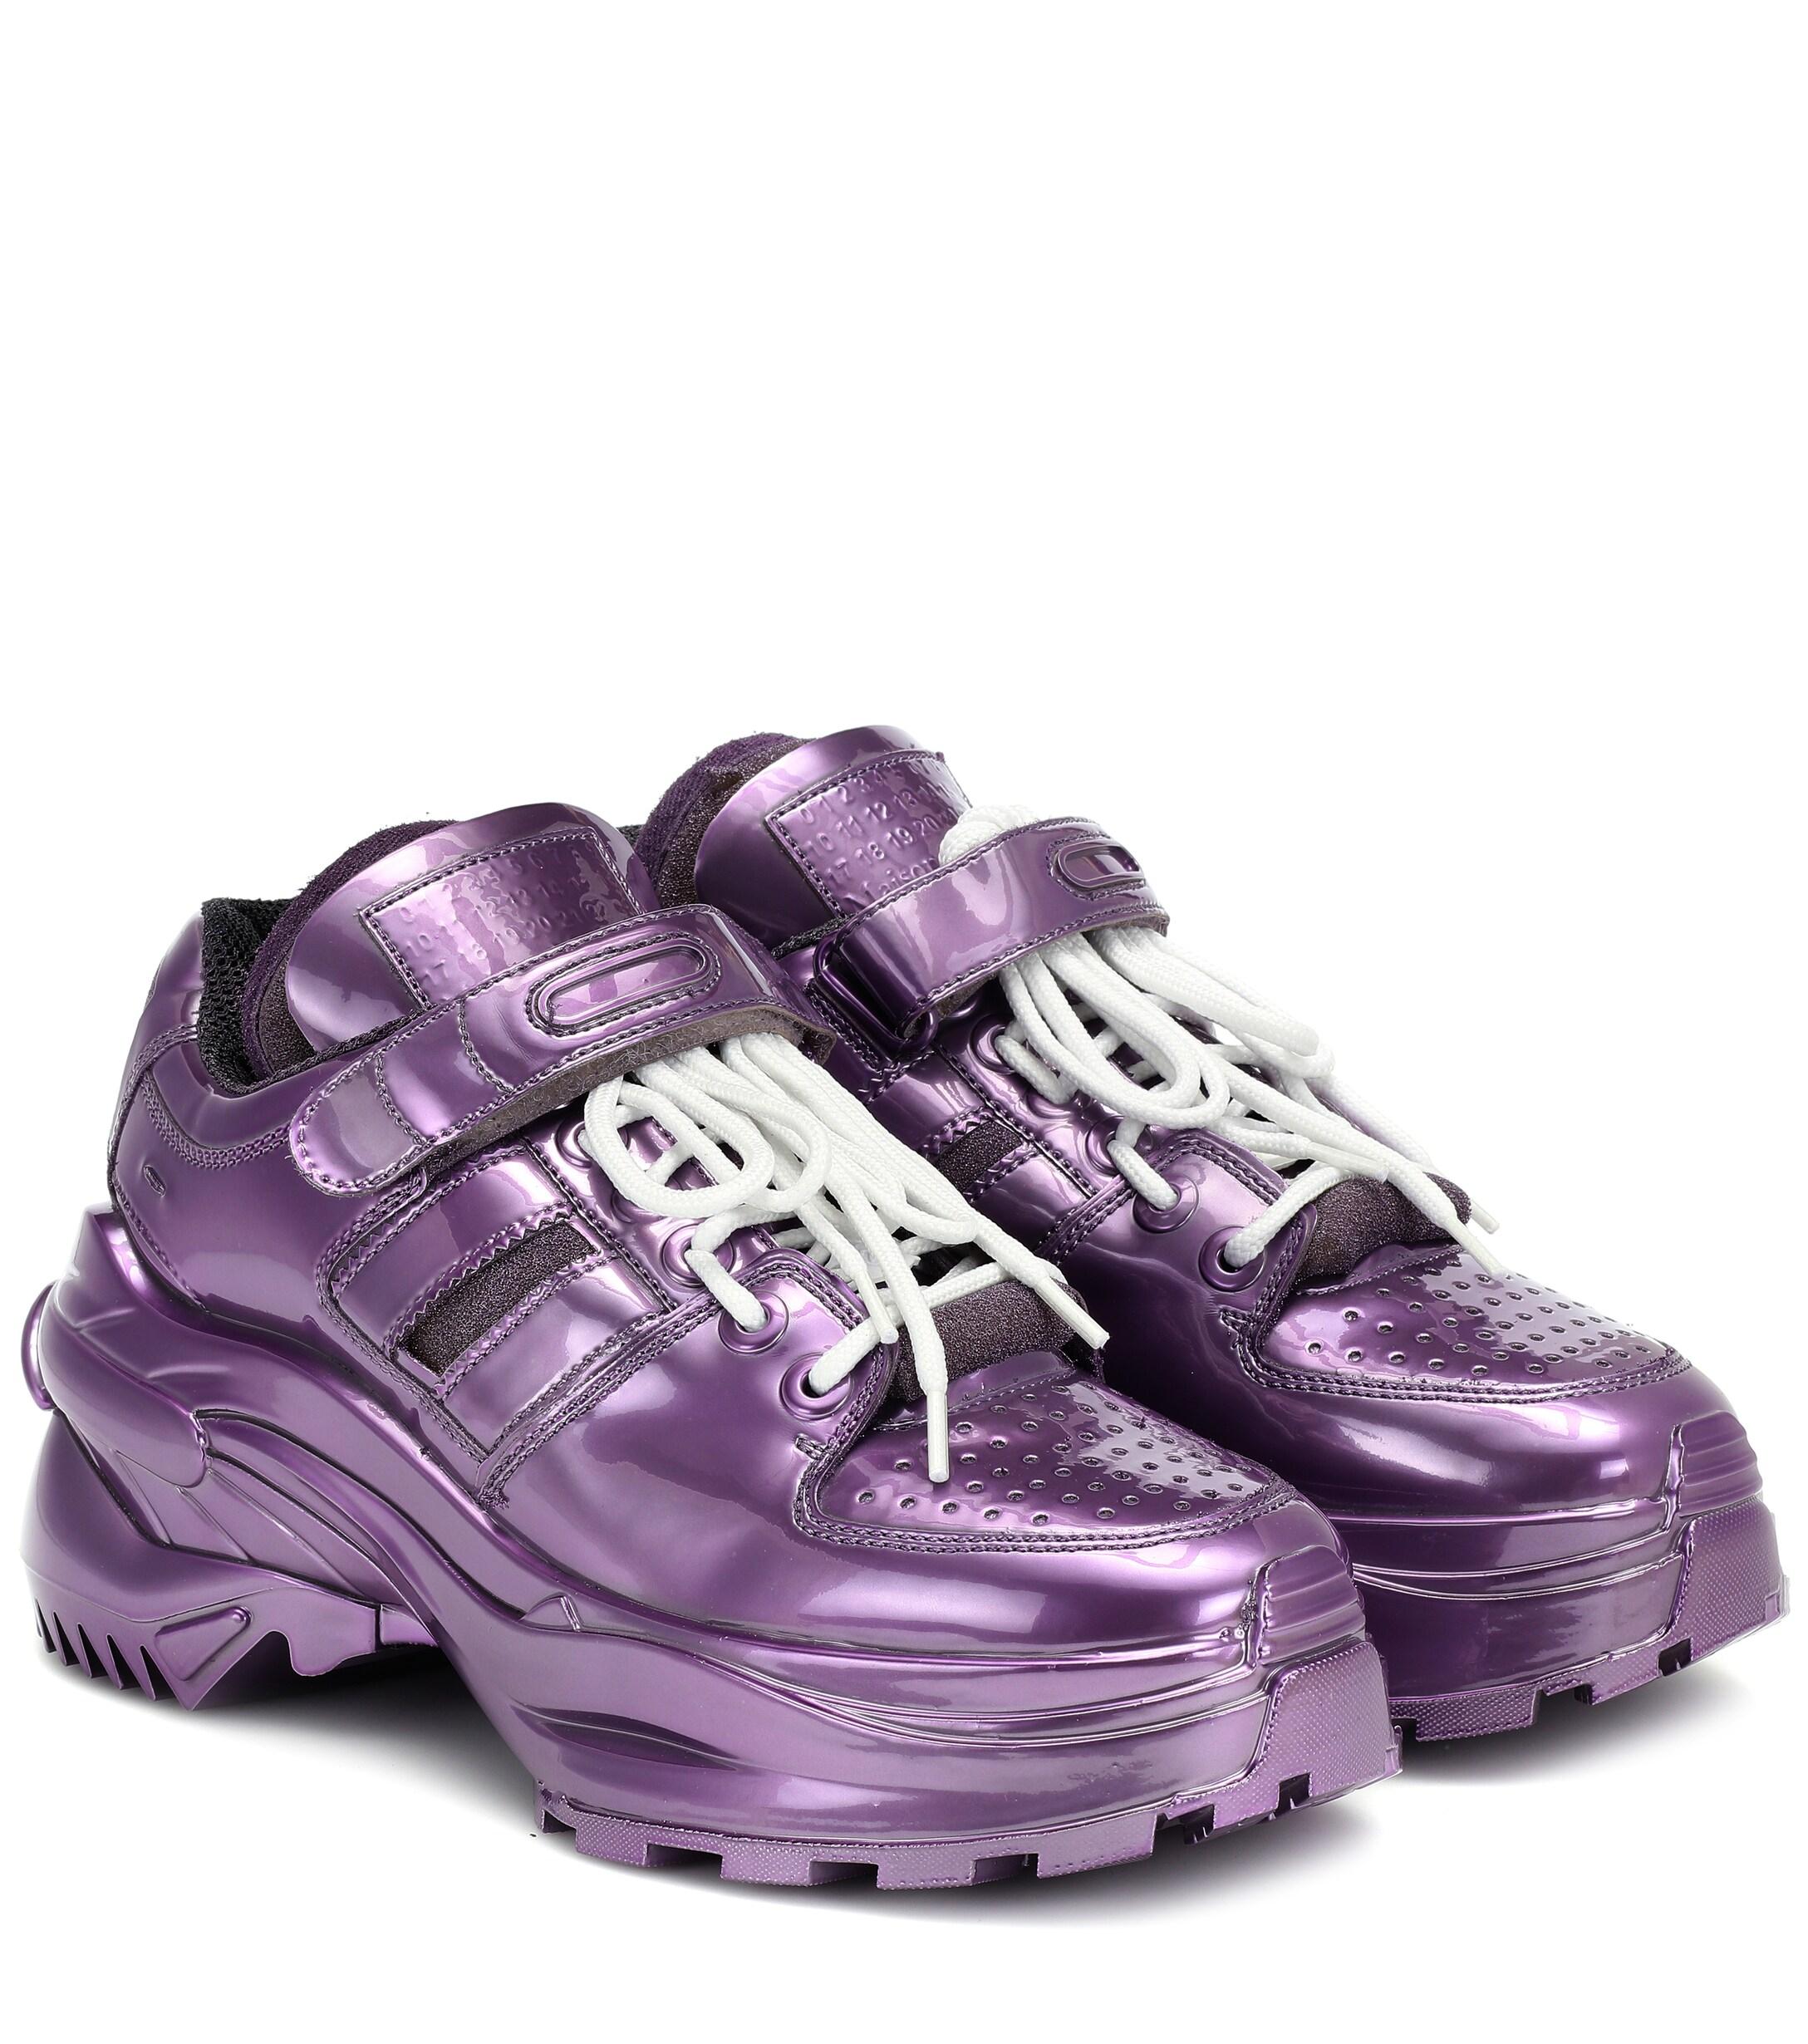 Maison Margiela Retro Fit Sneakers in Purple | Lyst